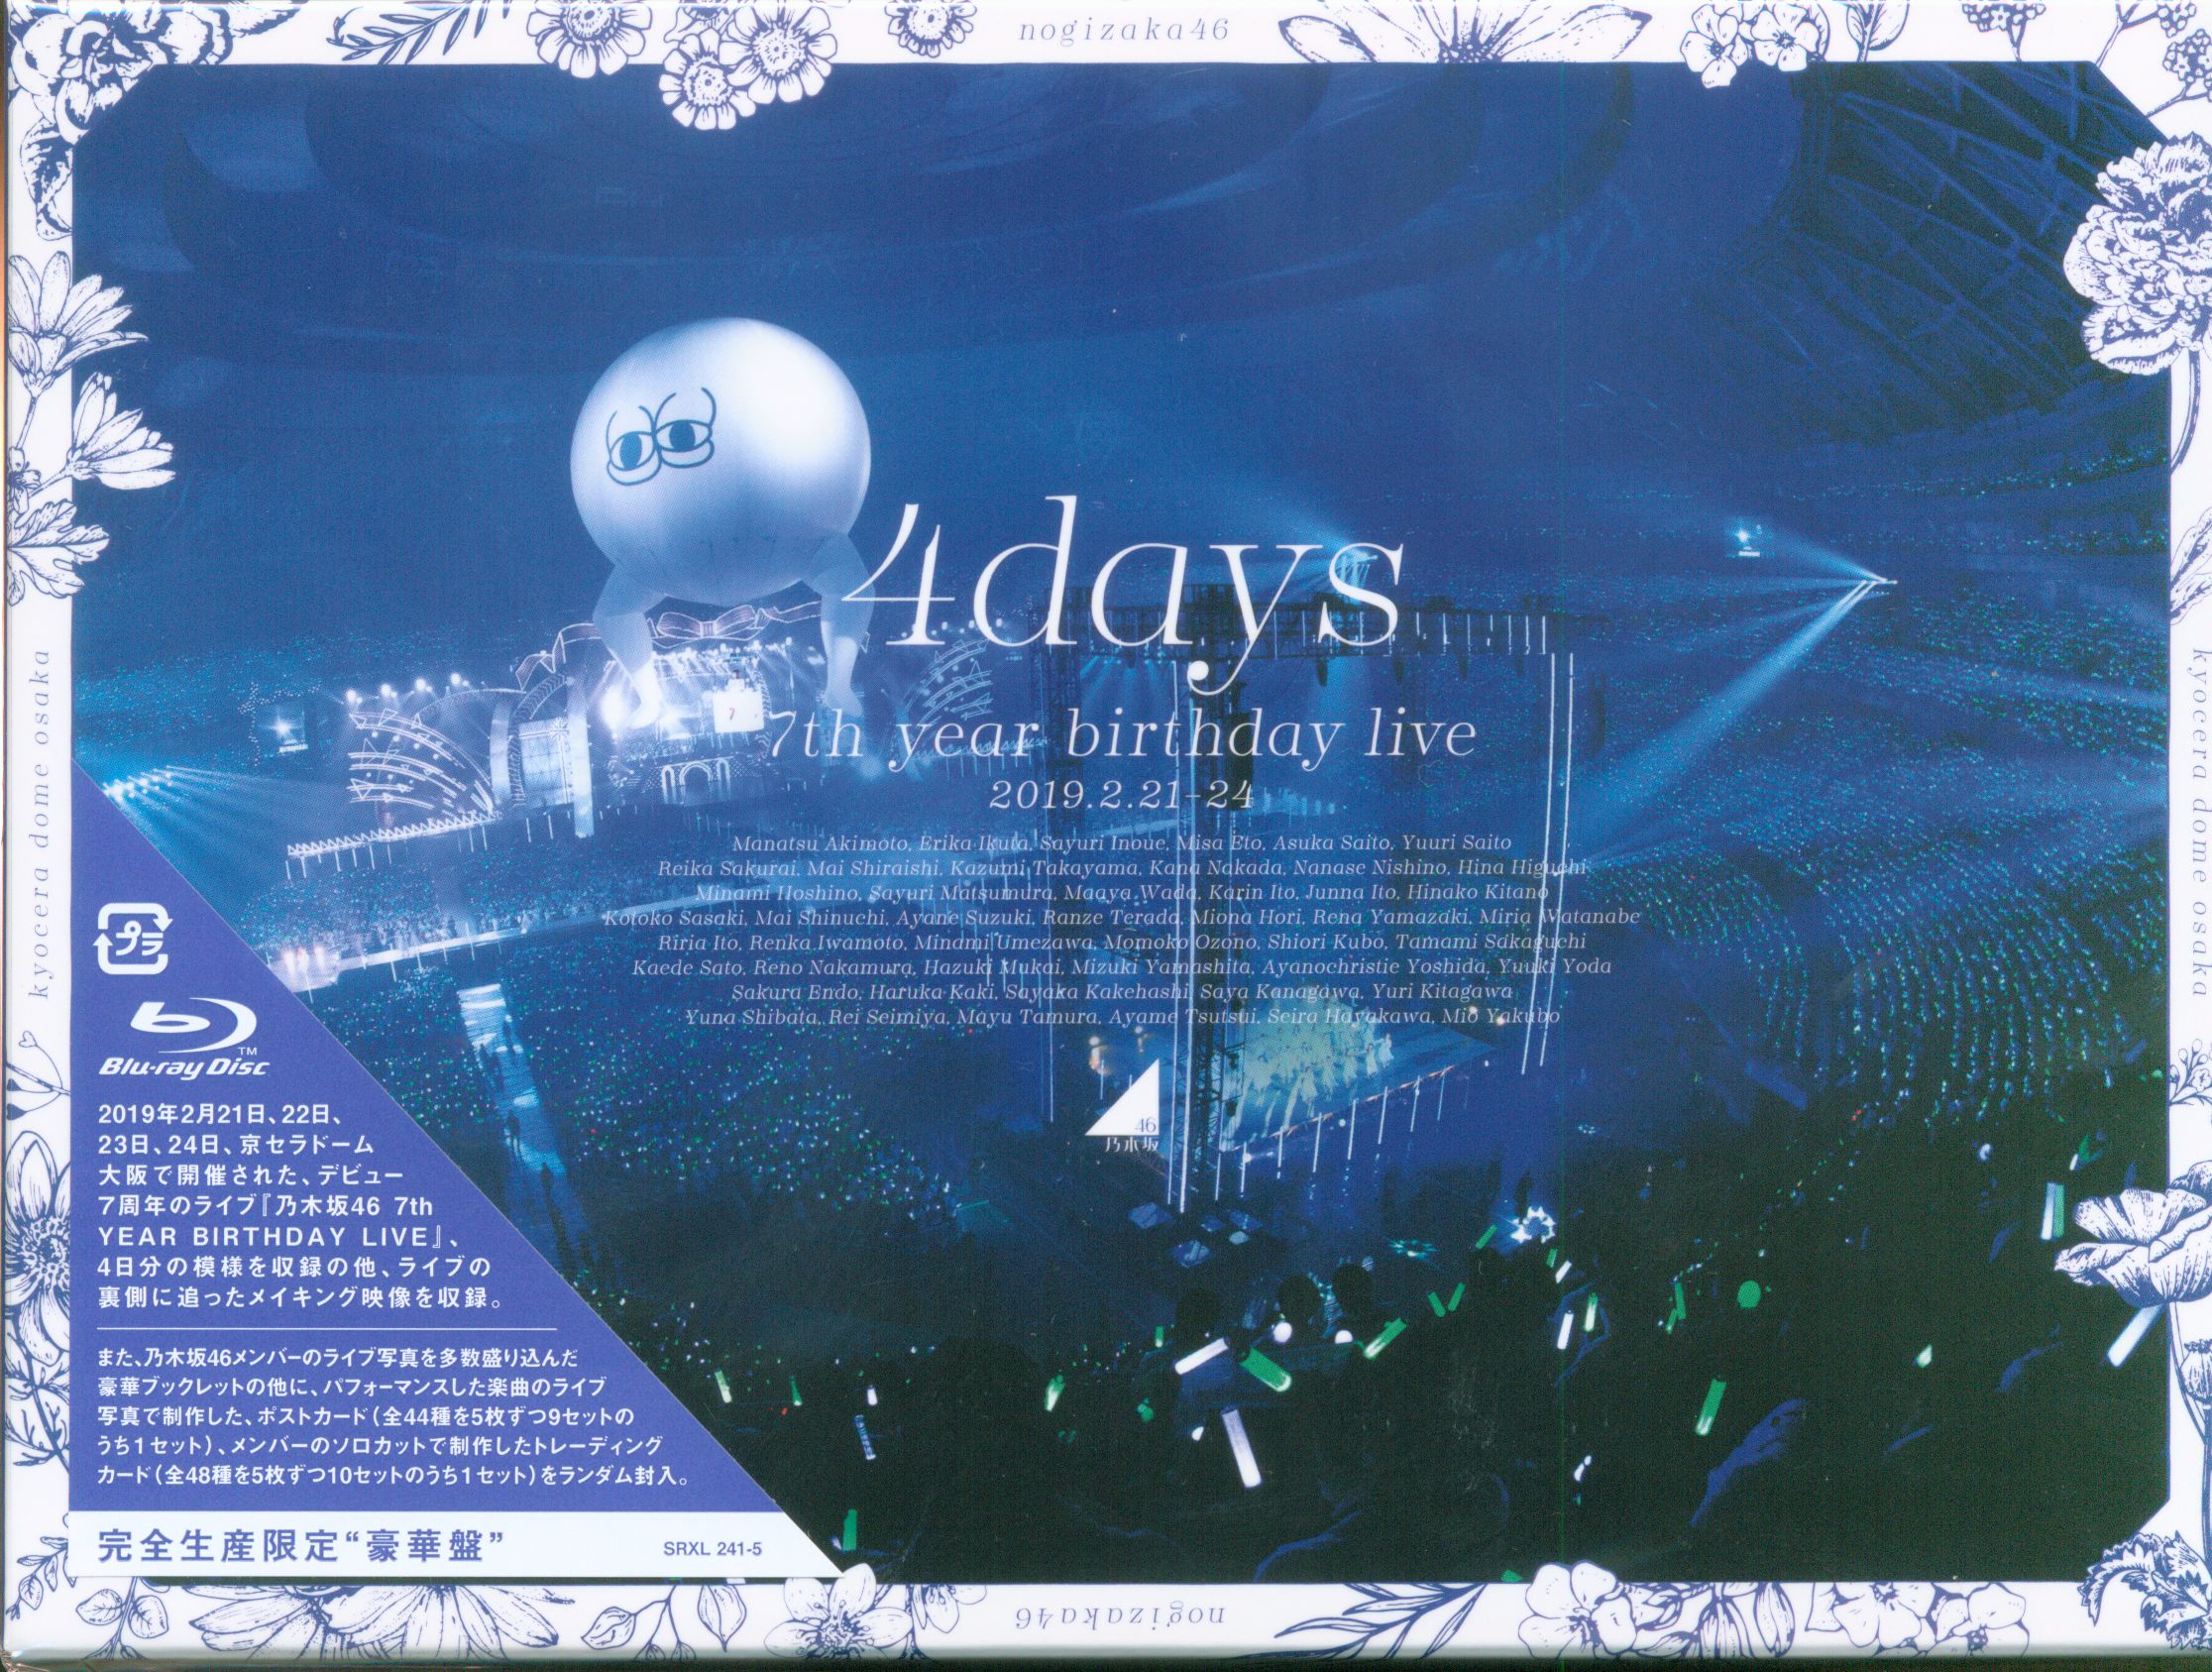 完全生産限定盤乃木坂46 7th YEAR BIRTHDAY LIVE | MANDARAKE 在线商店